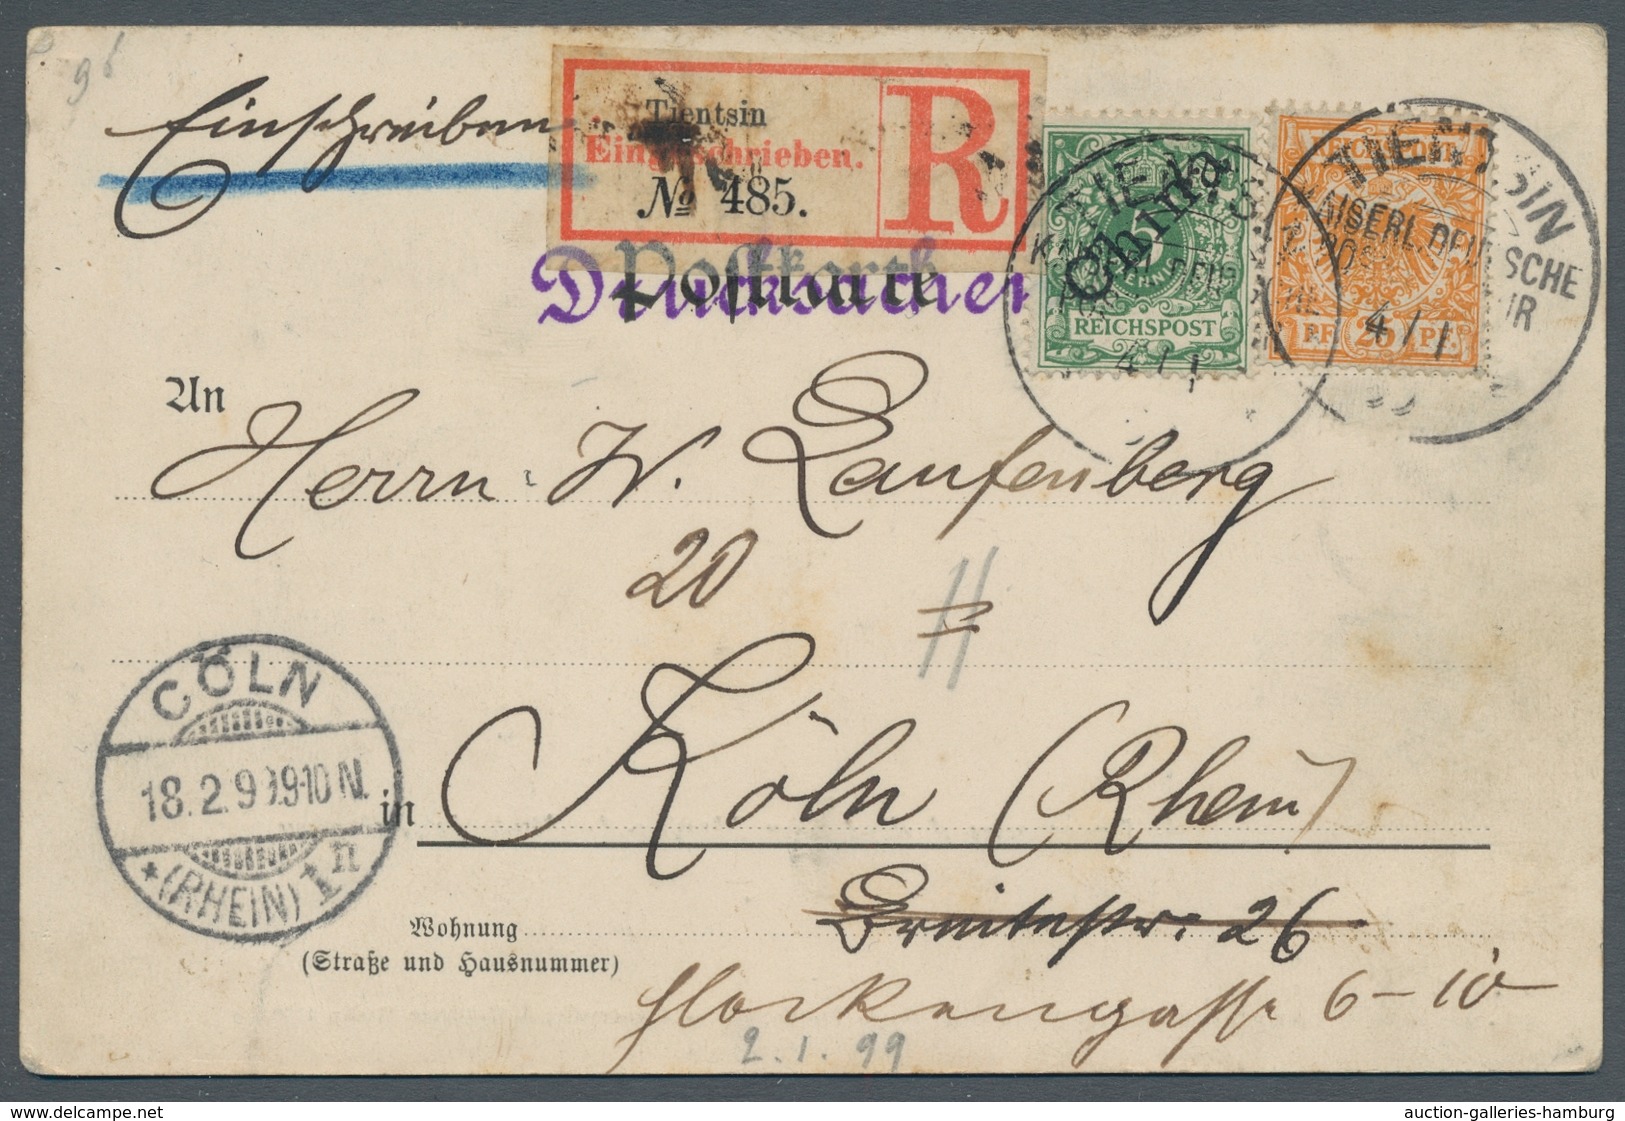 Deutsche Post In China - Mitläufer: 1899, "25 Pfg. Krone/Adler" Mit DPC Mi. 2 I Als Portorichtige Mi - China (offices)